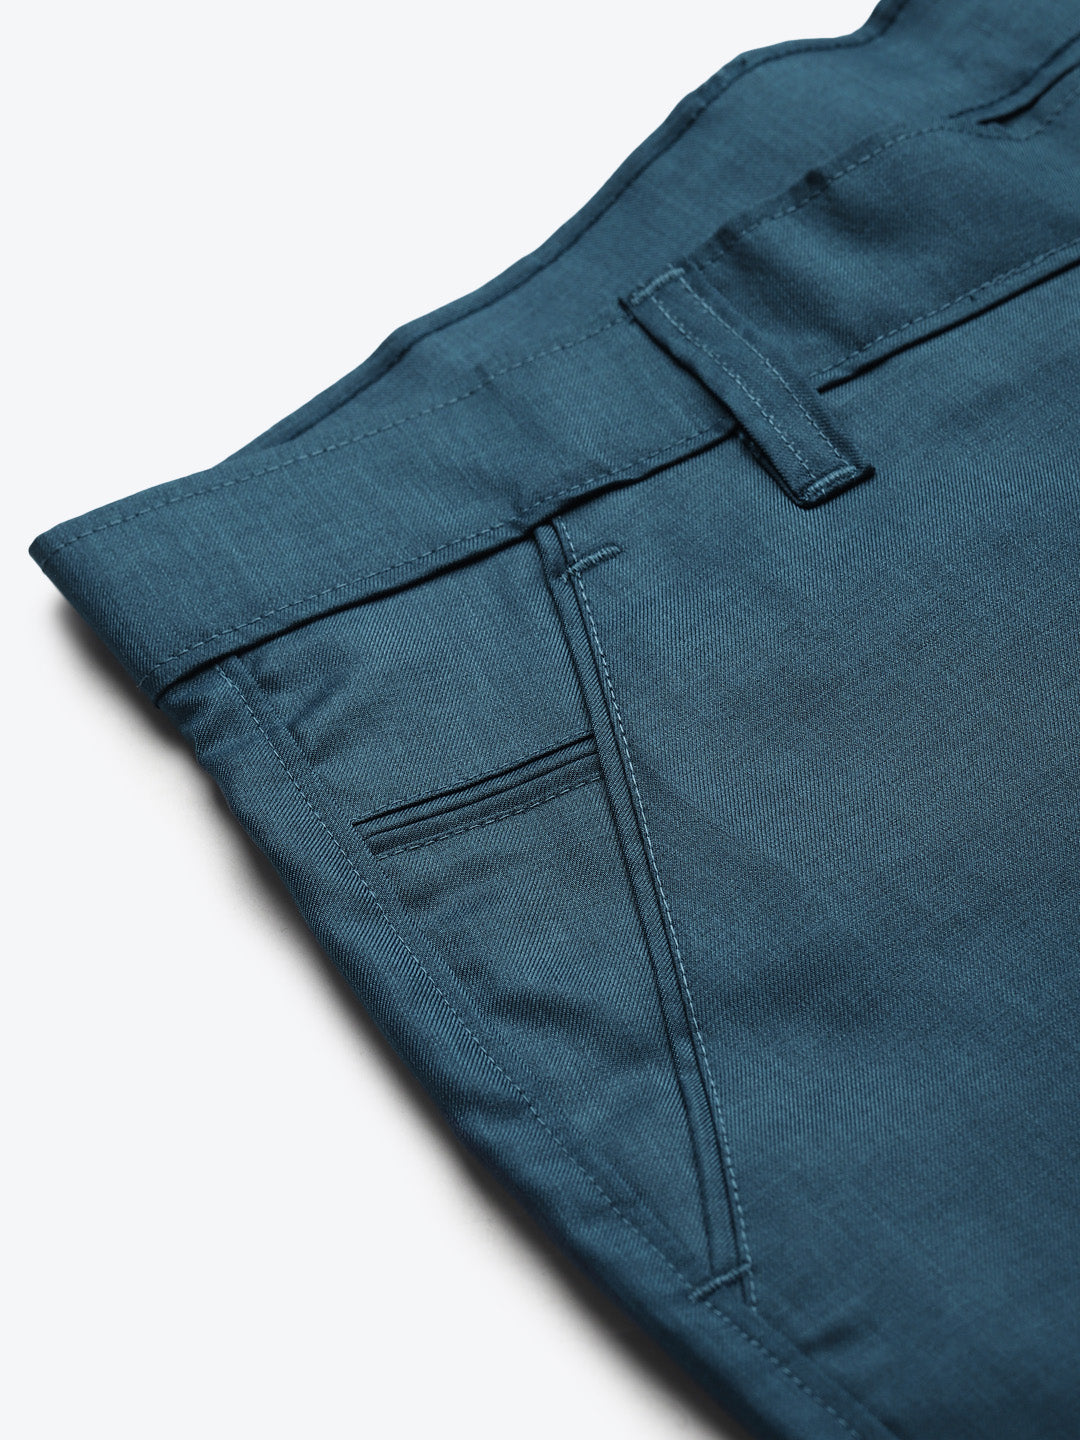 Men's Cotton Blend Teal Blue Solid Trouser - Sojanya